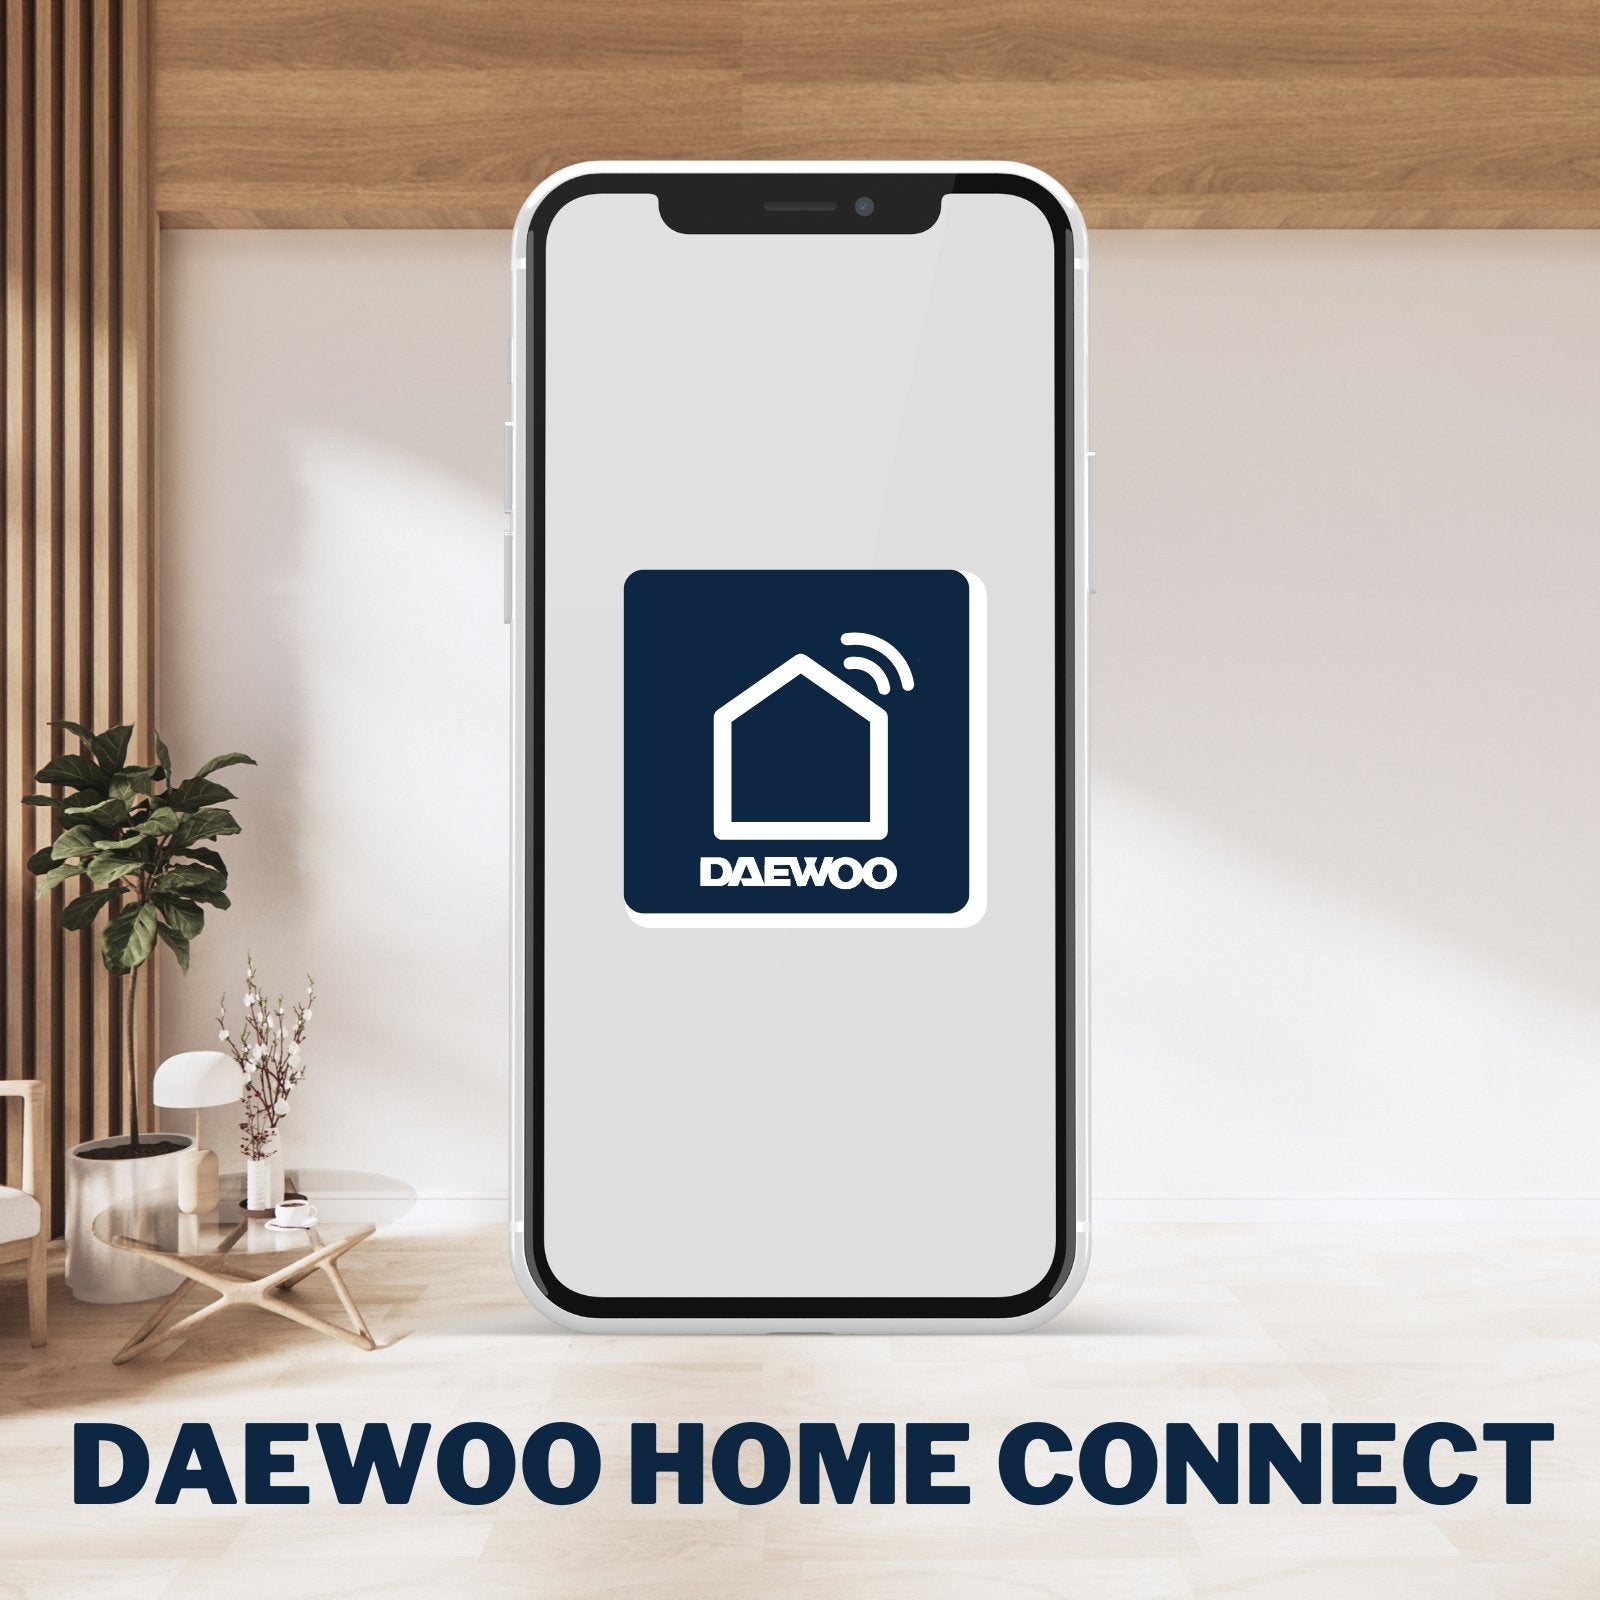 AM310 | Alarme Wifi / GSM 4G à écran tactile - Daewoo Security